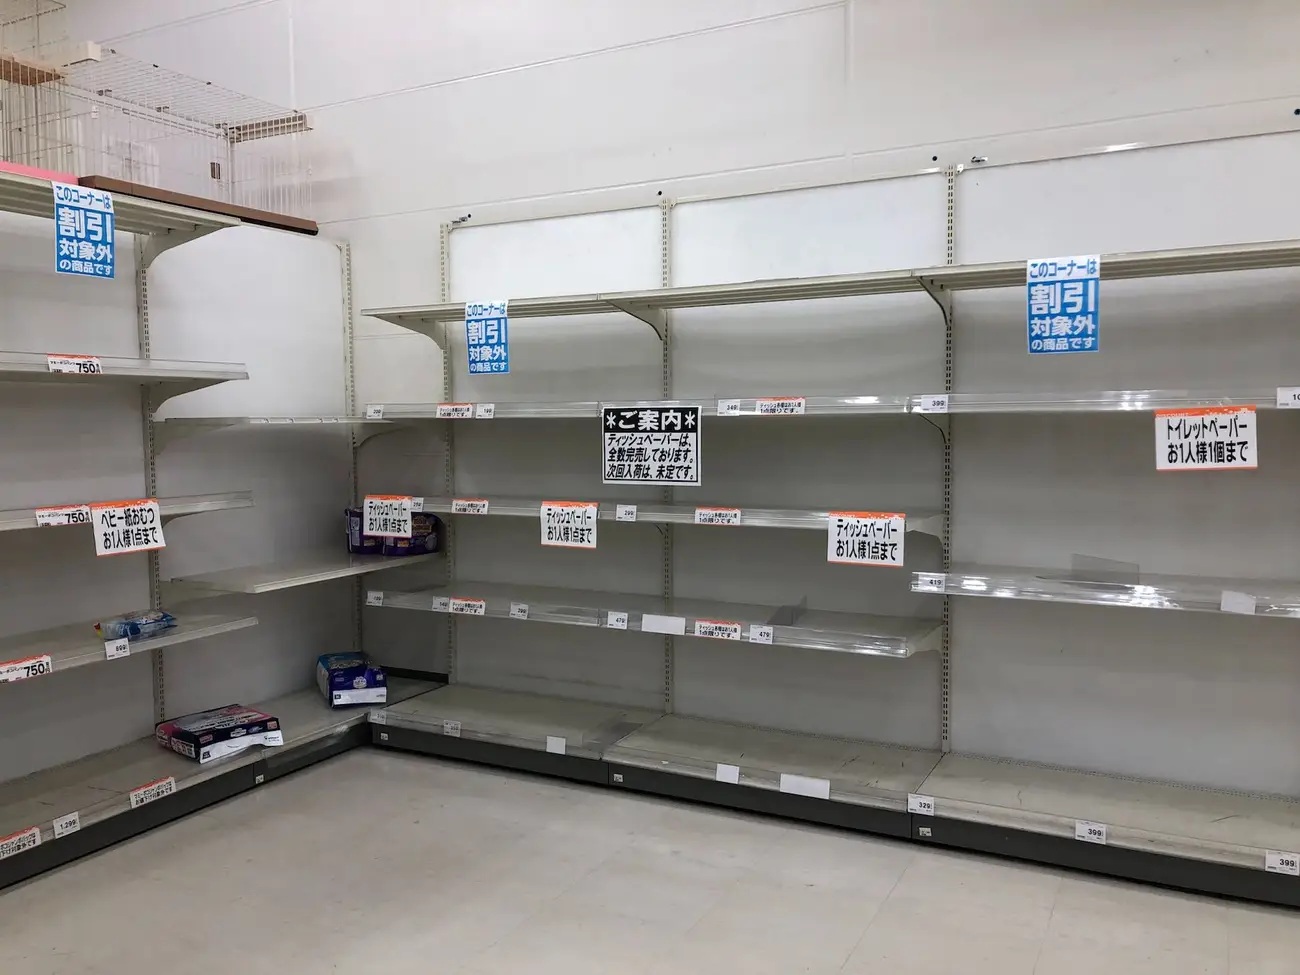 empty or near empty store shelves in Japan